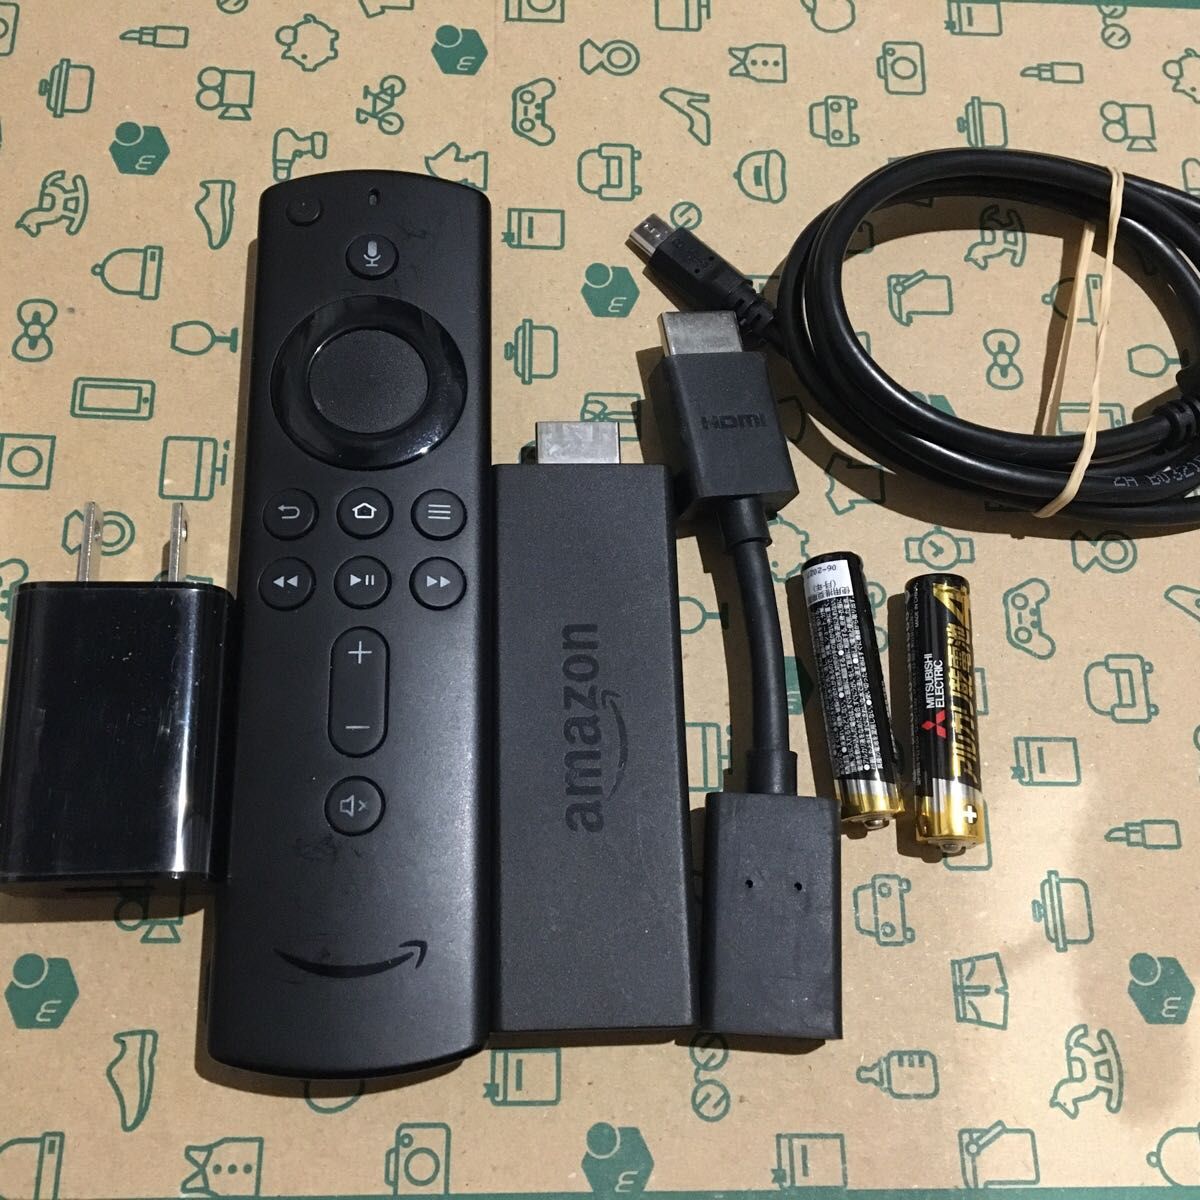 Amazon Fire TV Stick  (ファイヤースティック)